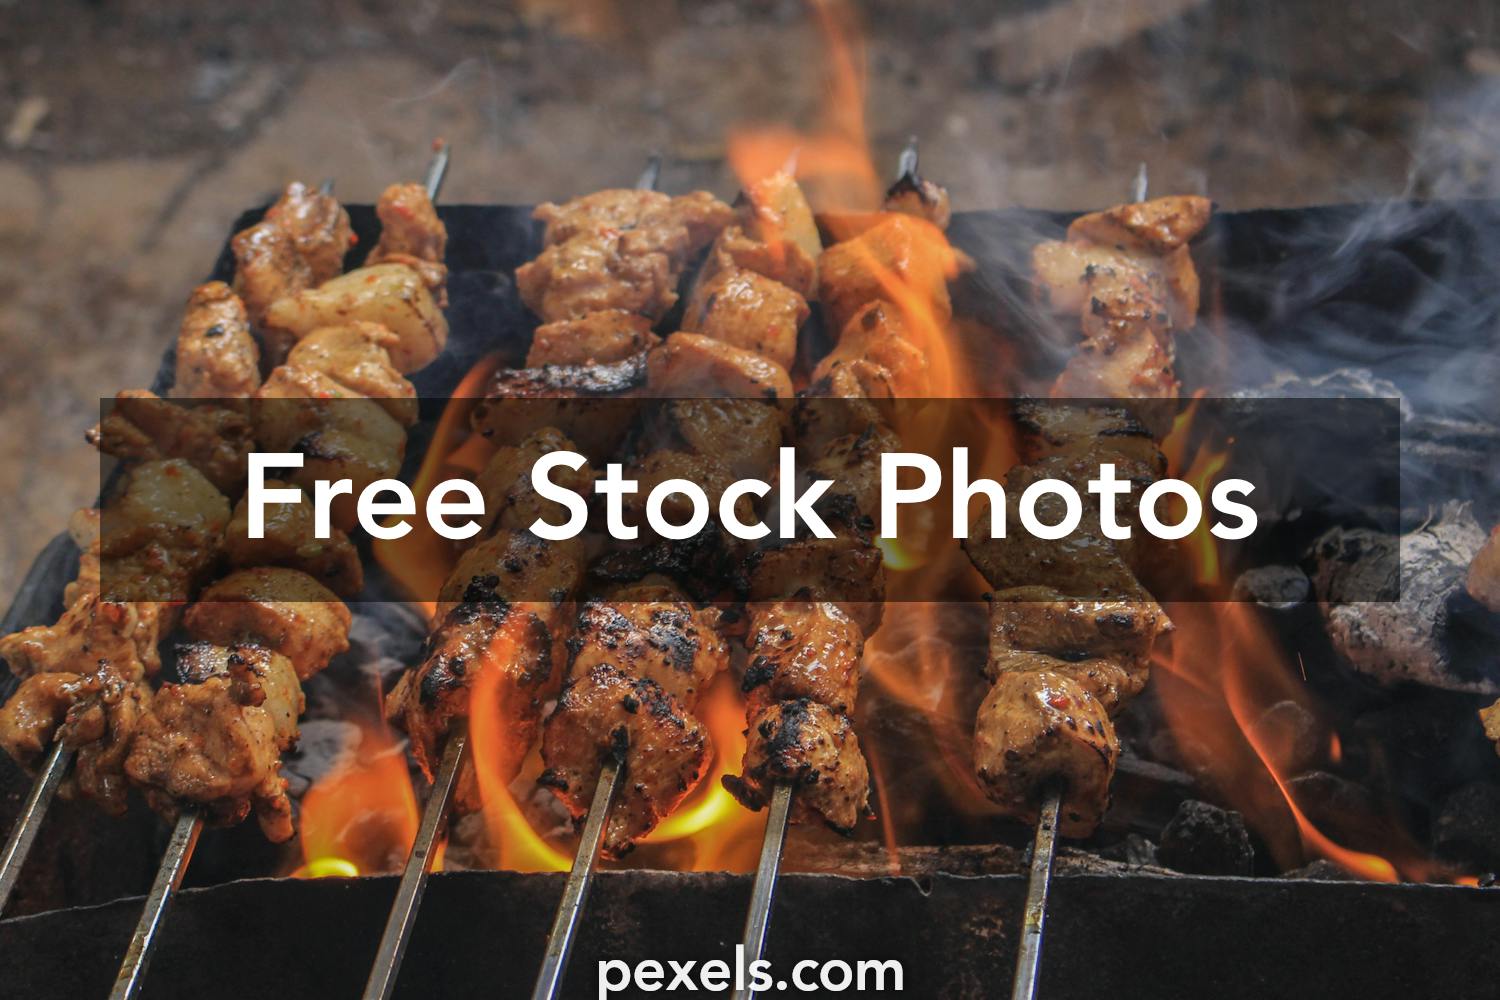 Beautiful Kebab Photos Pexels Free Stock Photos Images, Photos, Reviews